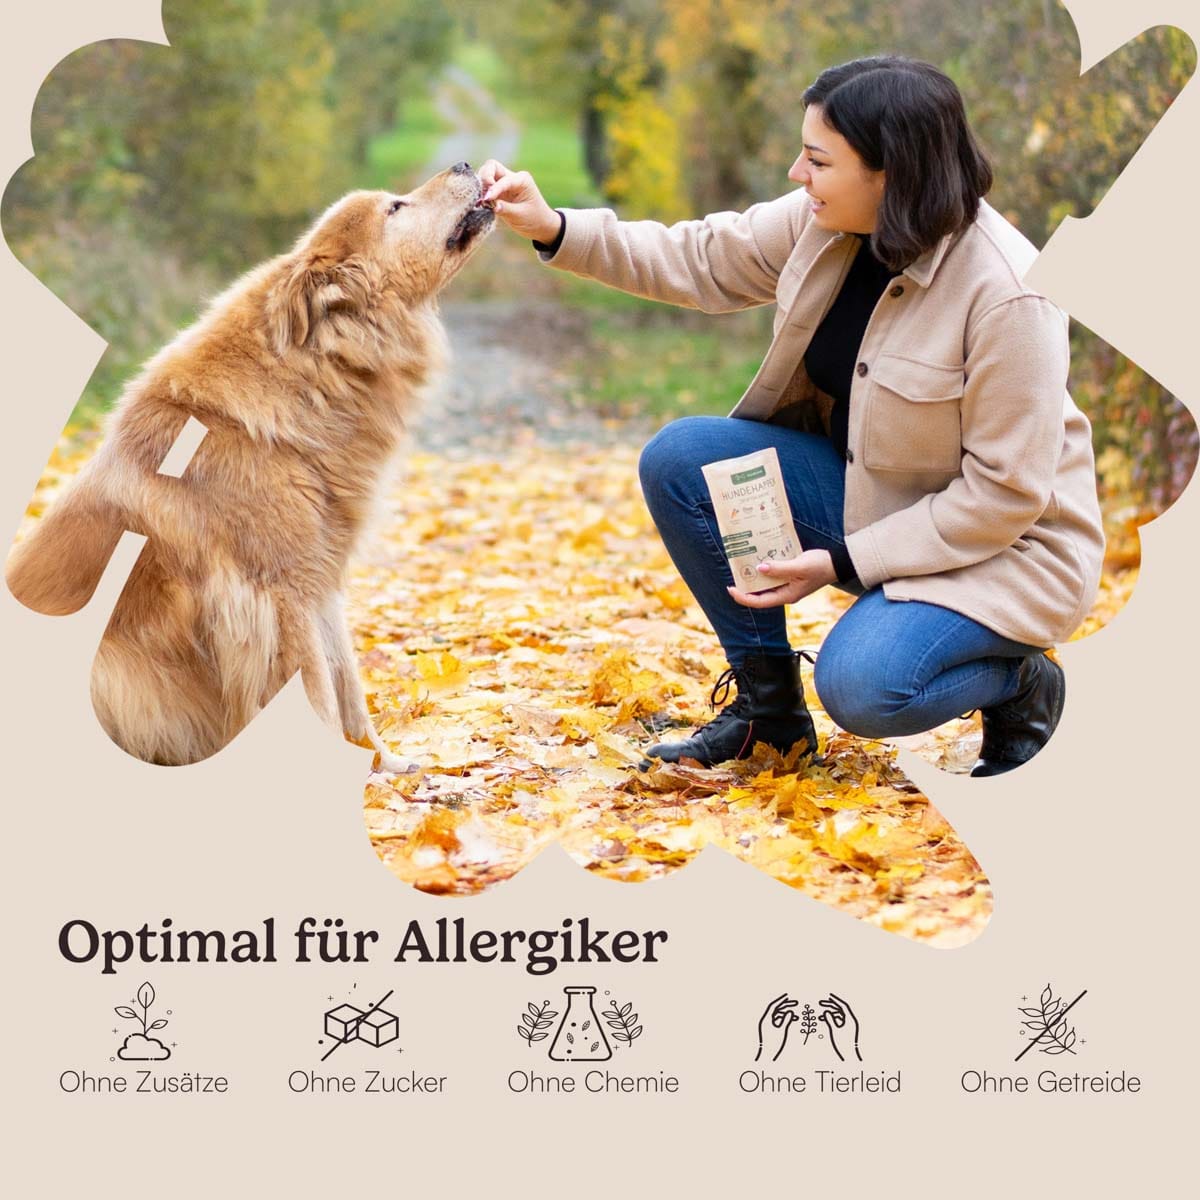 Vegane Schlemmerbox für Hunde mit einer Auswahl an Hundehappen und Dentalsticks, unterstützt Straßenhunde in Rumänien. Ideal für Allergiker und wählerische Esser.